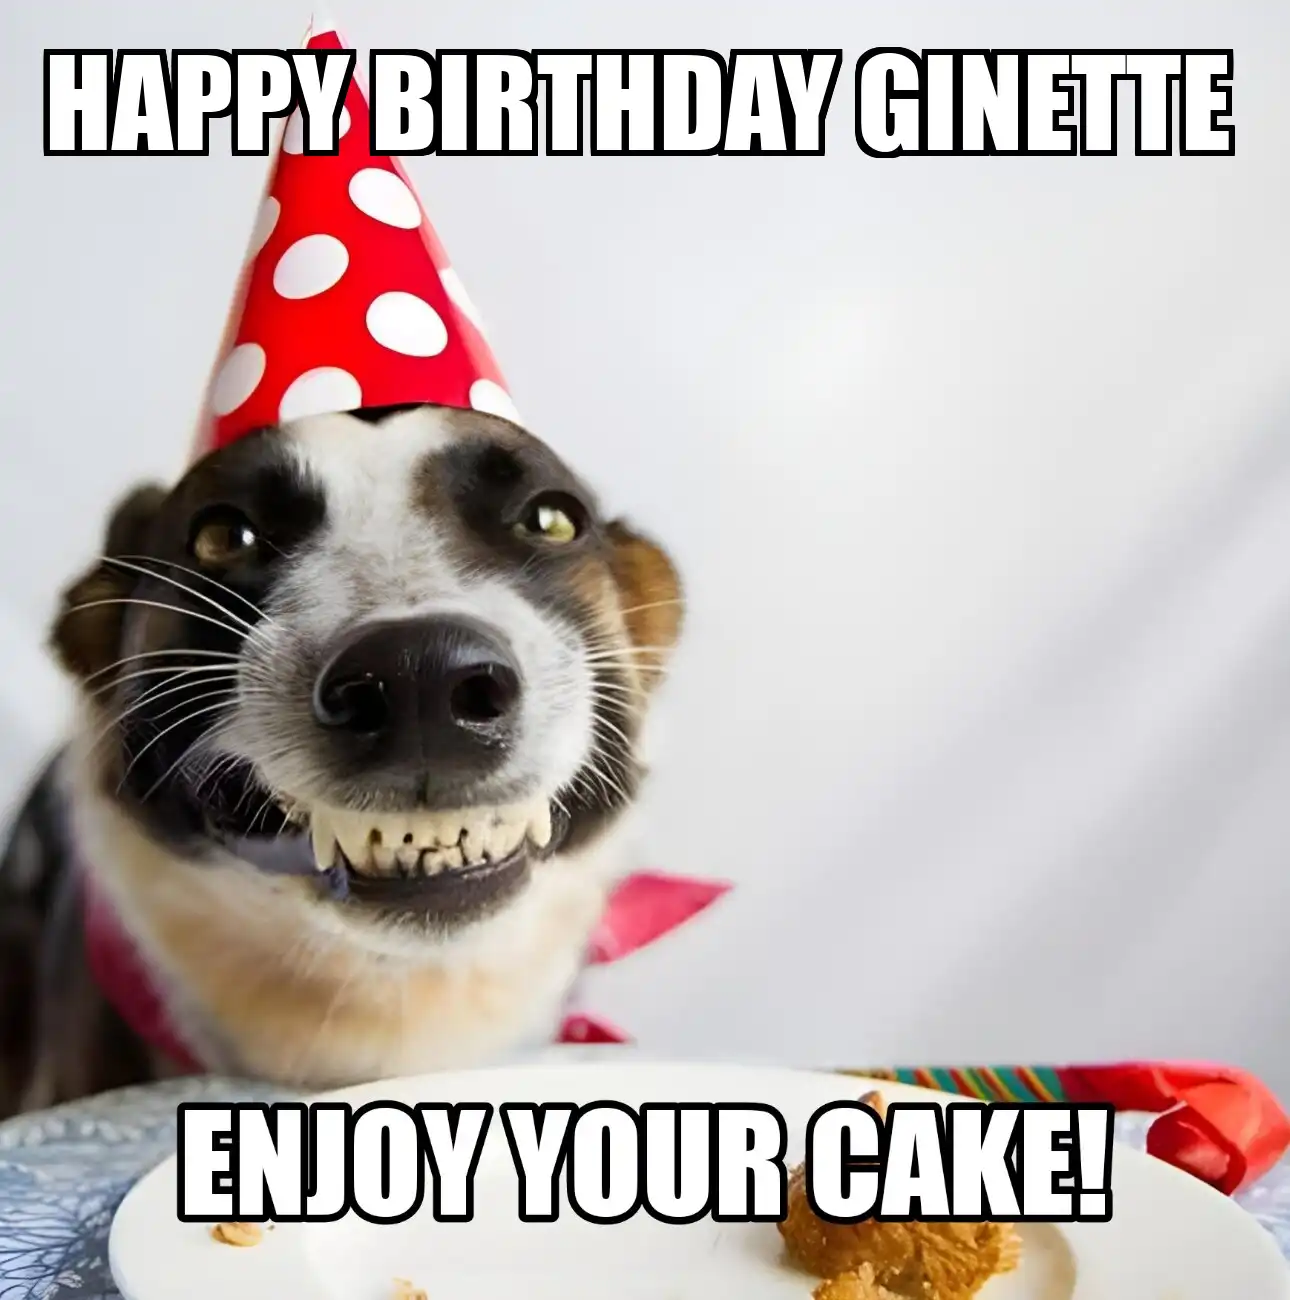 Happy Birthday Ginette Enjoy Your Cake Dog Meme